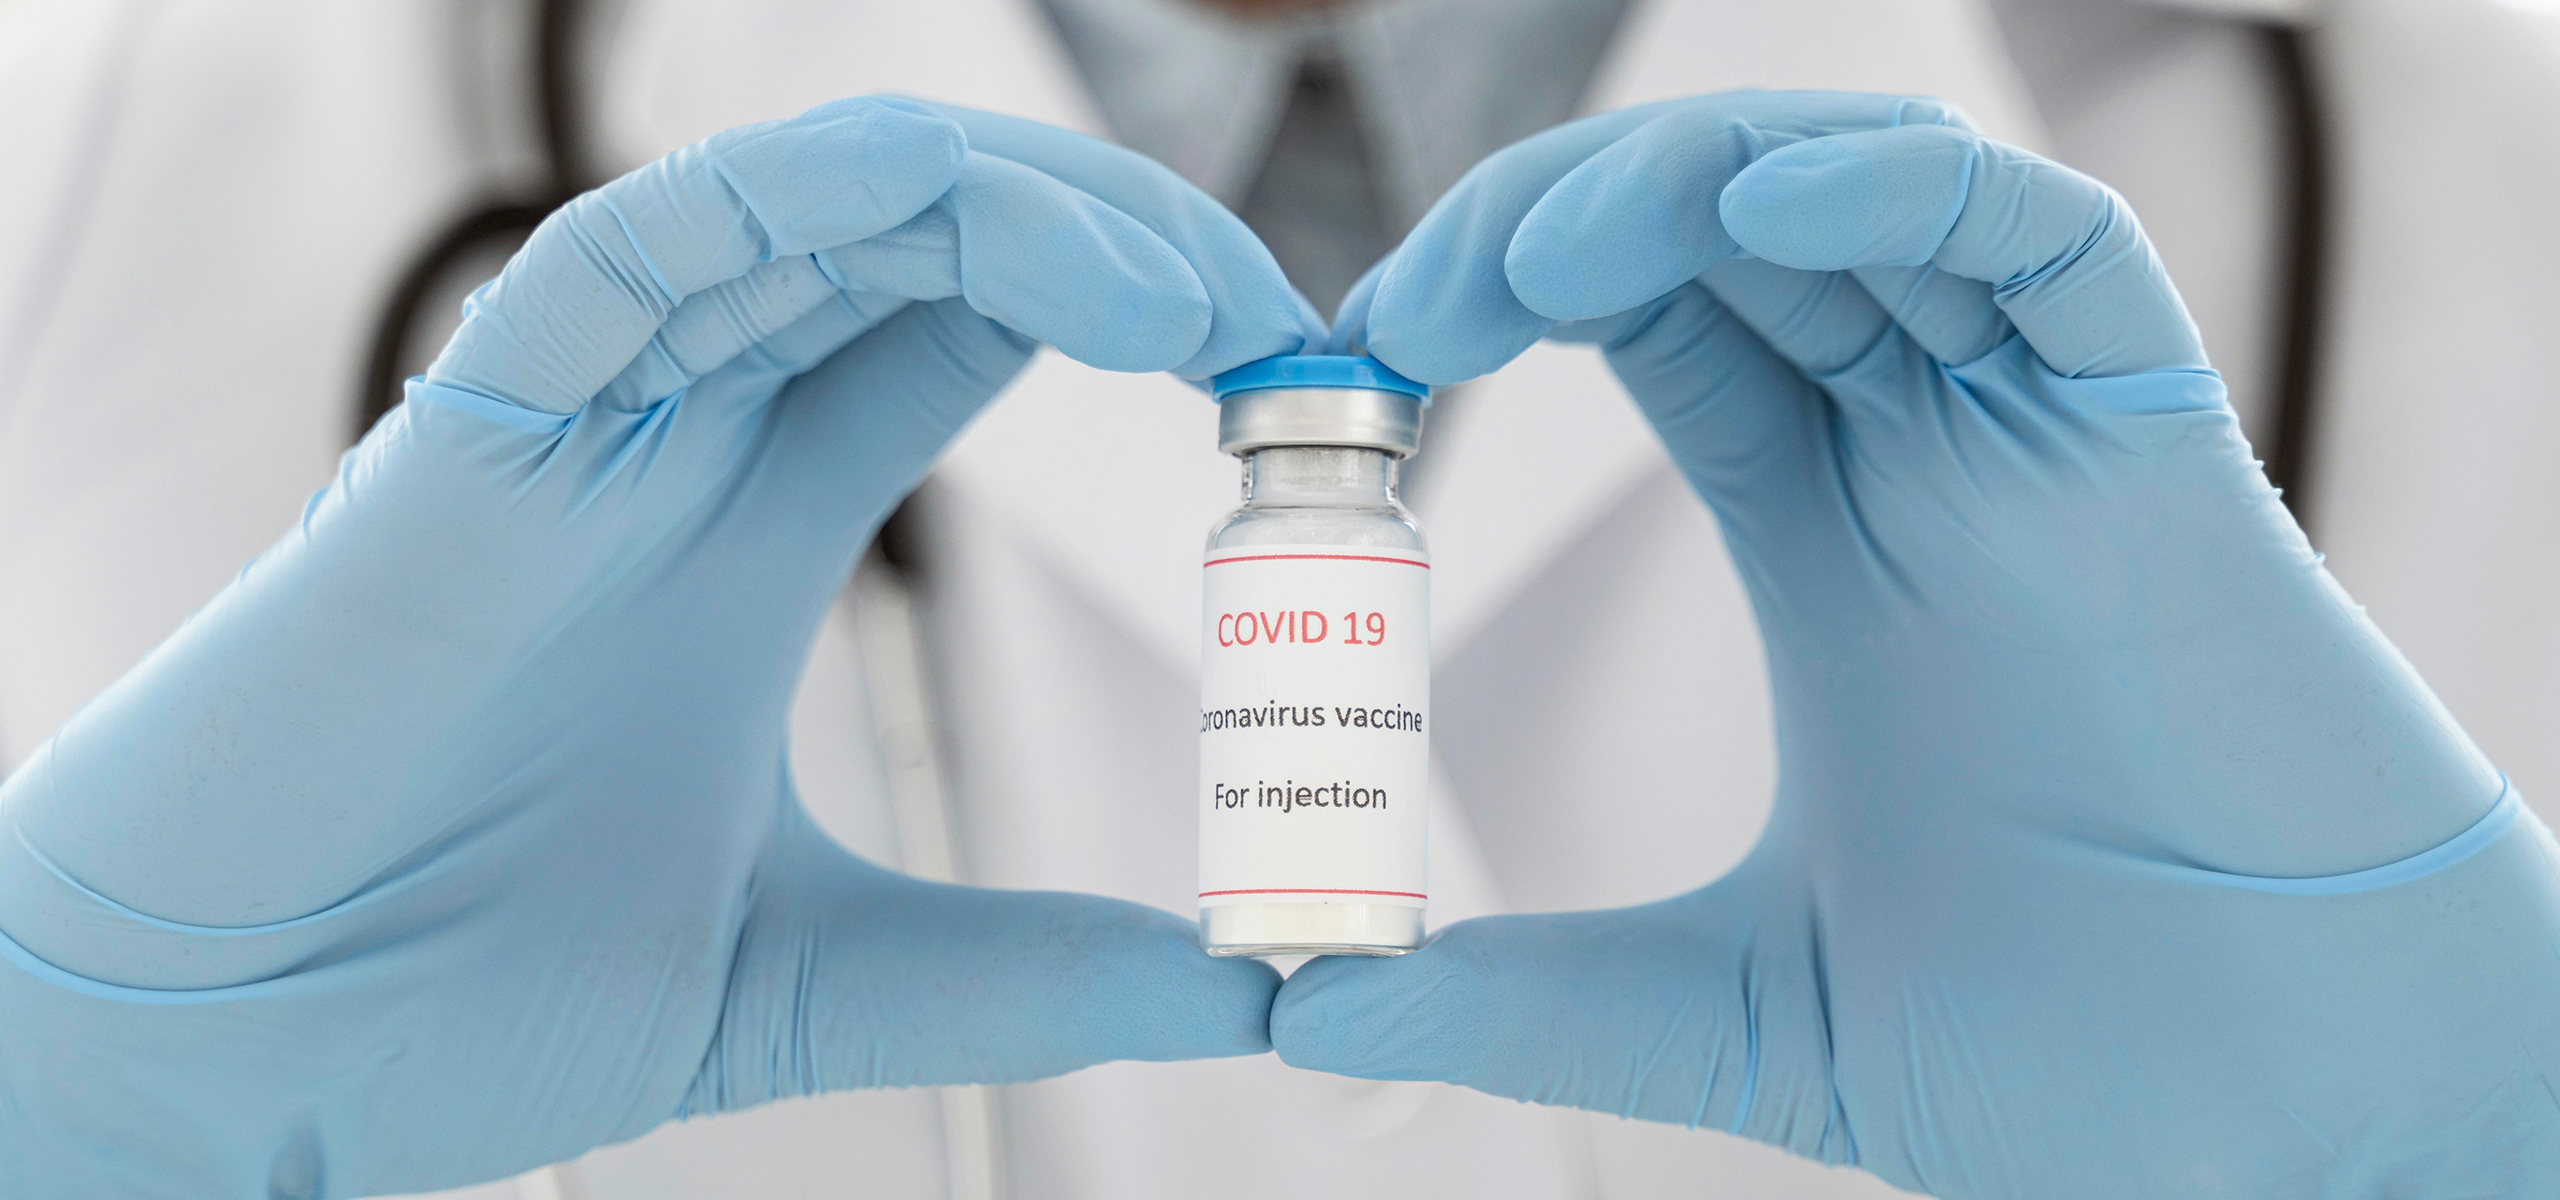 Já tive covid-19, posso me vacinar? Idosos precisam de cadastro?’: 20 respostas sobre a vacinação contra a covid-19 no Brasil